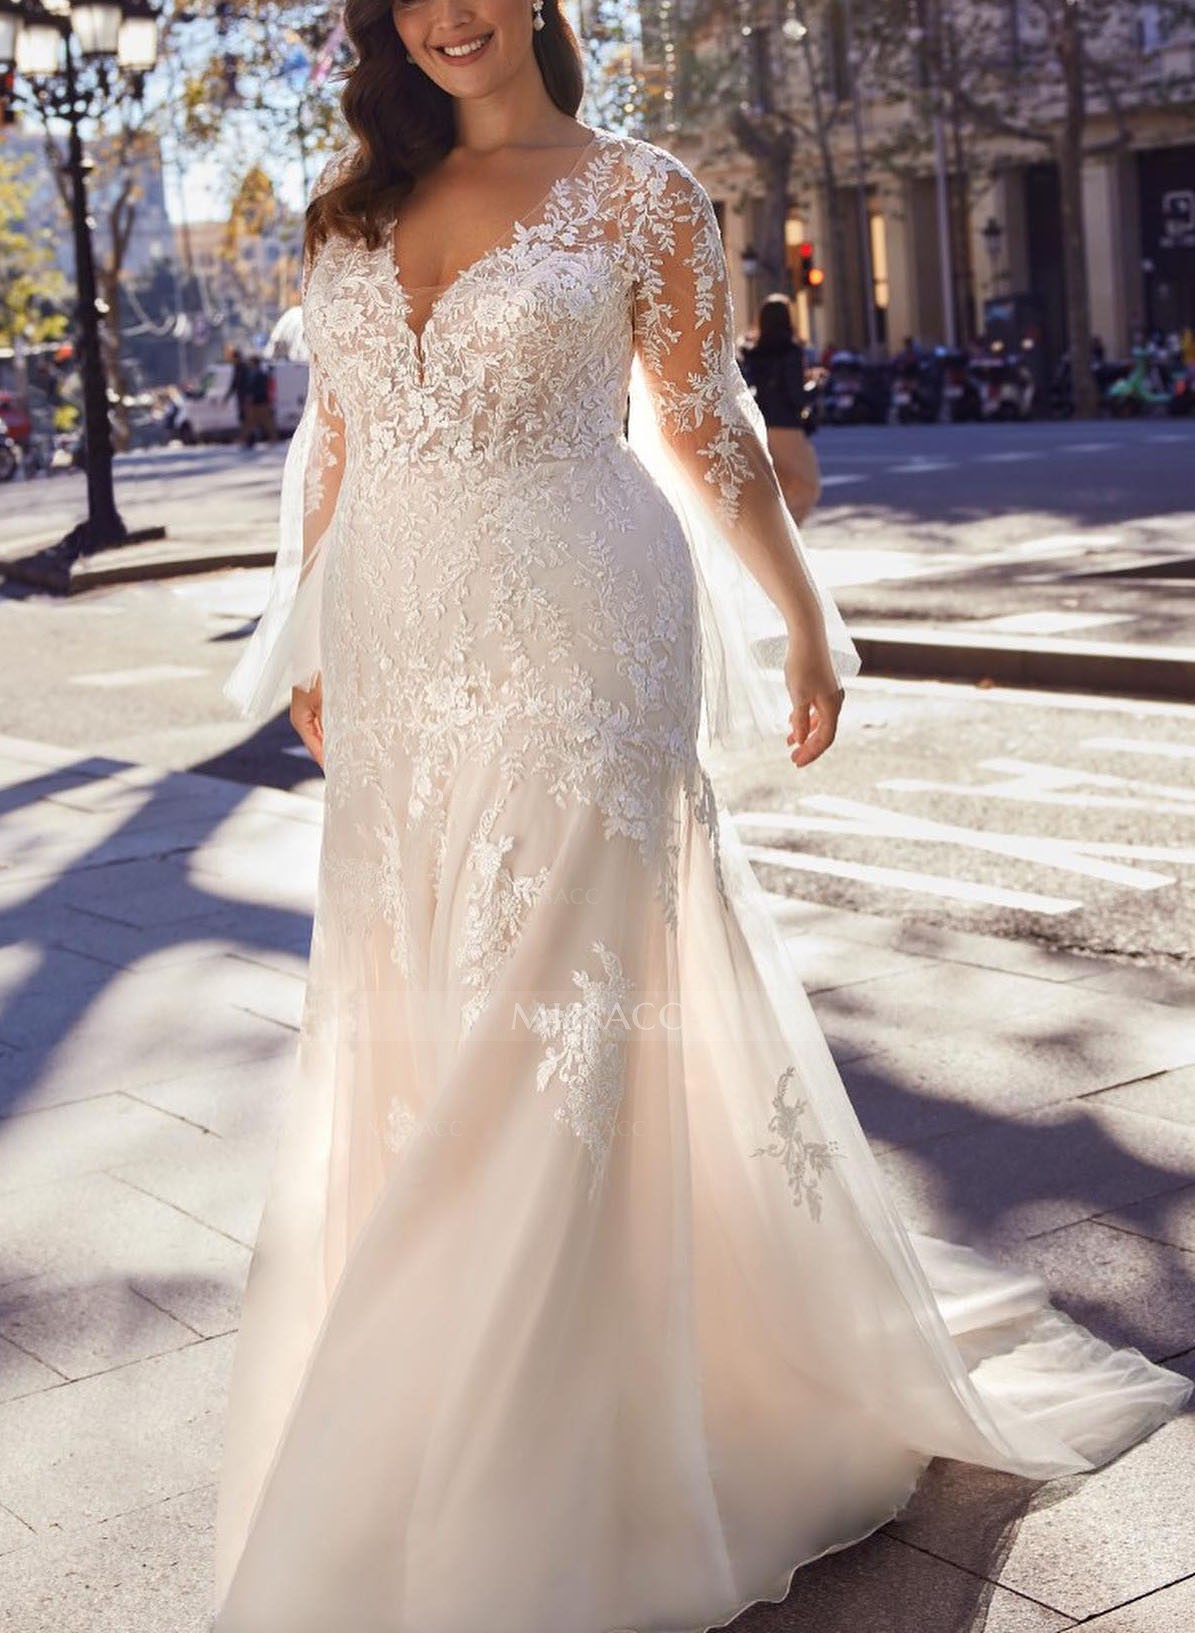 Lace Long Sleeves V-Neck Sheath/Column Wedding Dresses With Back Hole